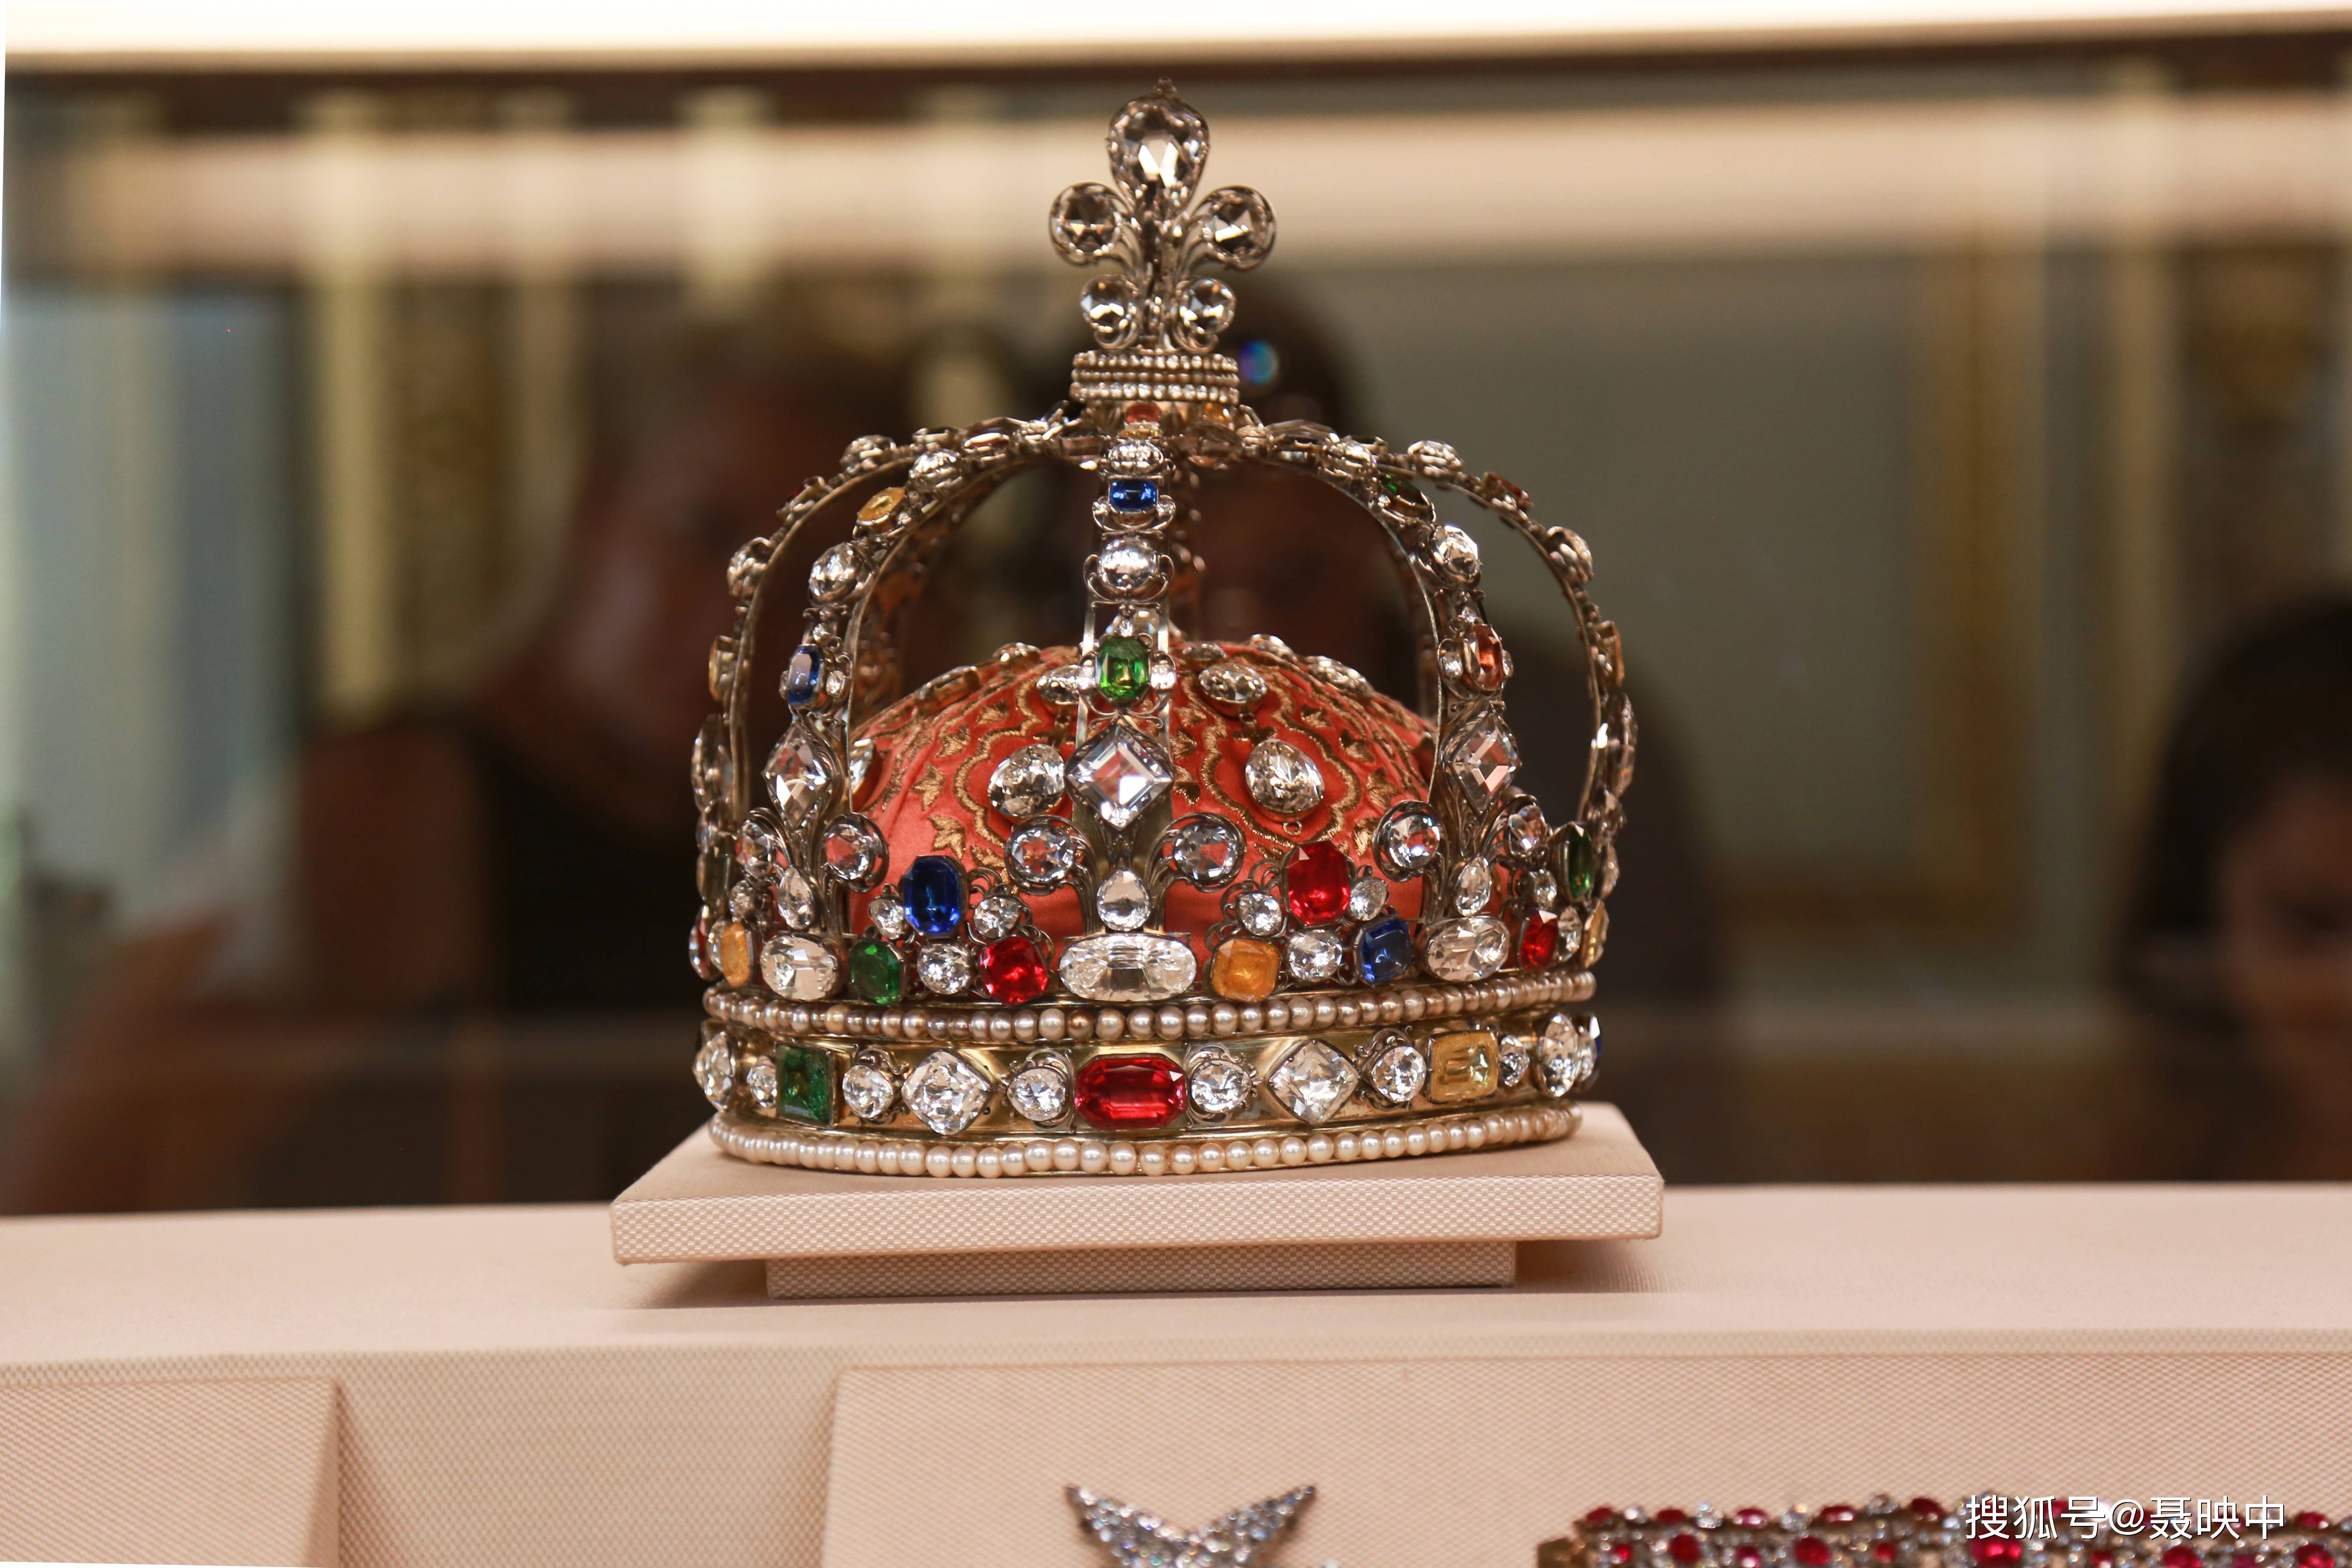 【56】法国旧王朝仅存的王室王冠,王冠高24厘米,直径22厘米.